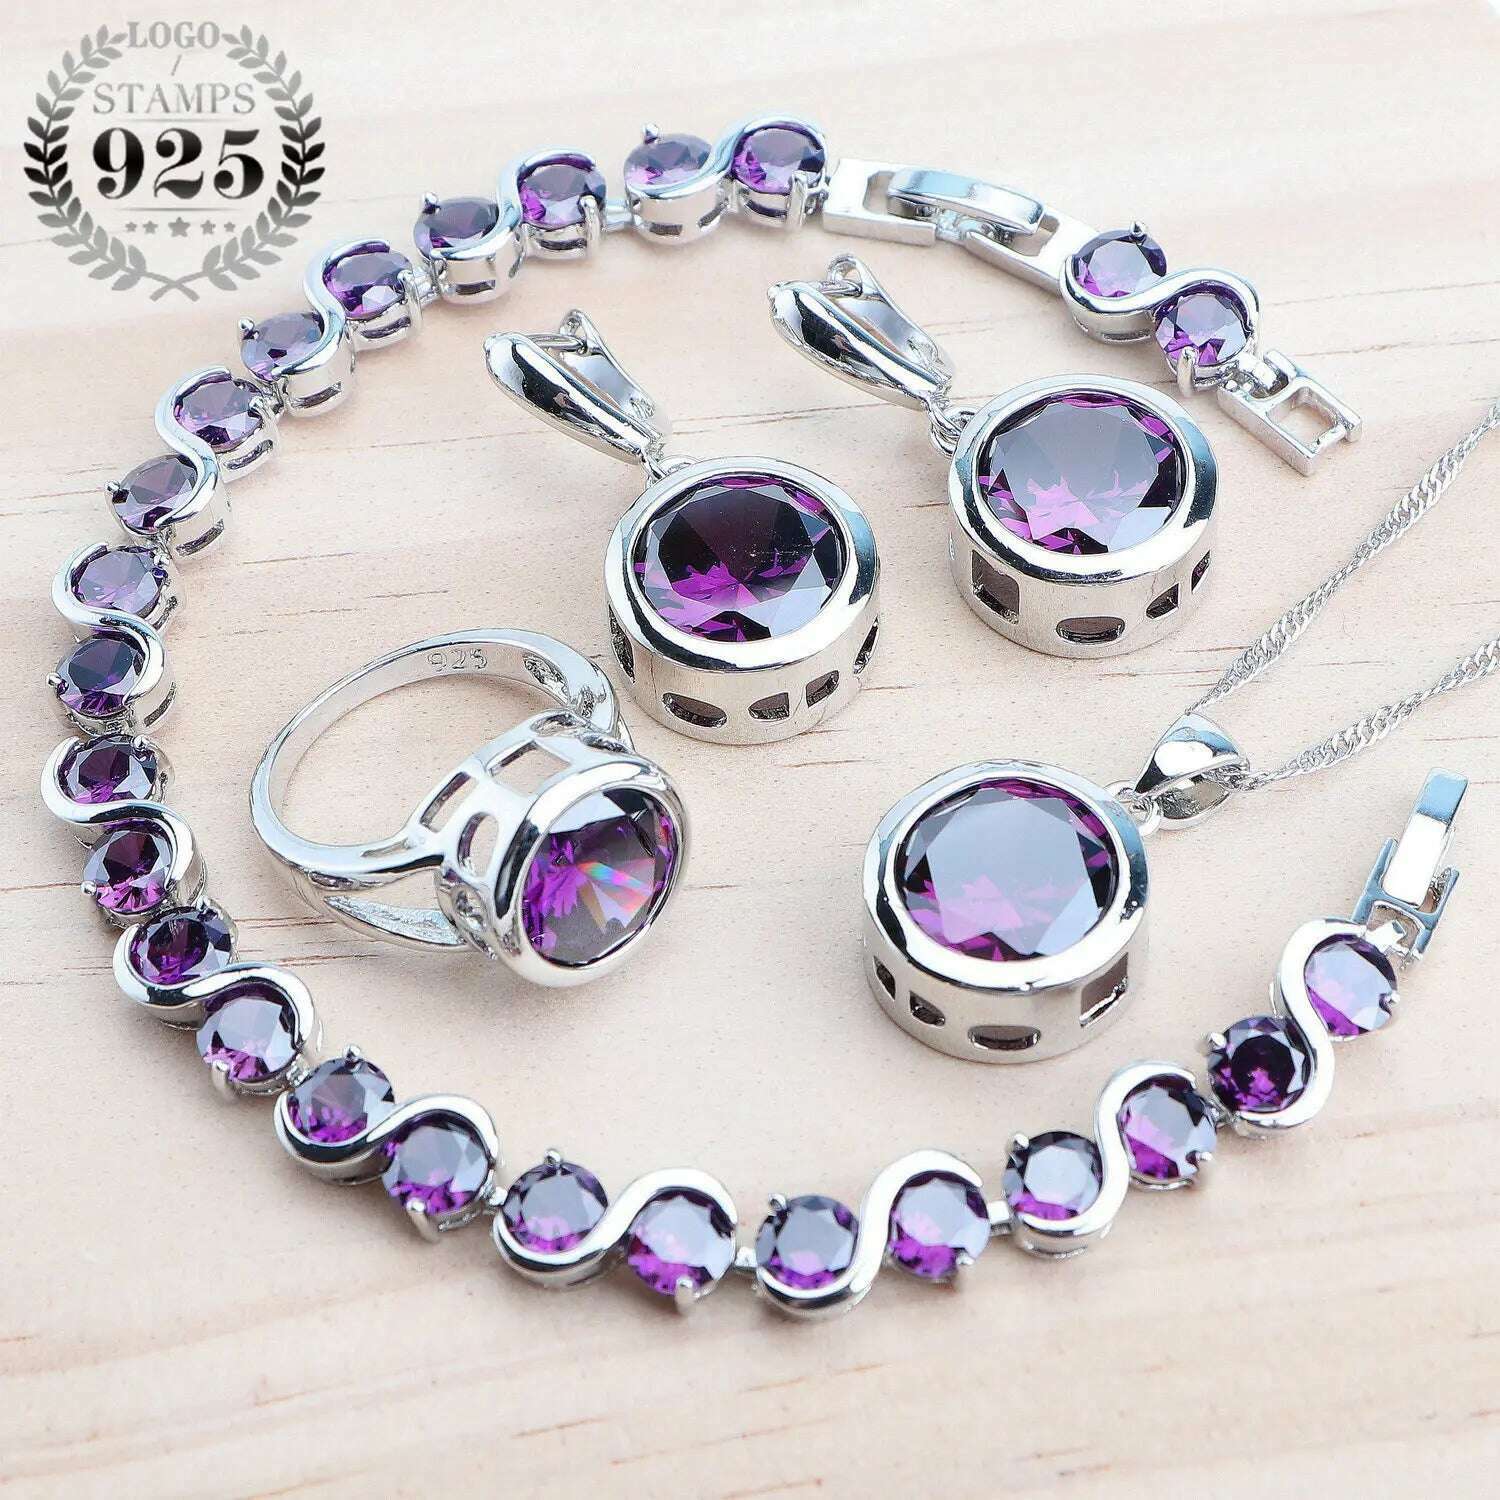 Bridal Silver 925 Jewelry Sets For Women Wedding Jewelry Ladies Purple Zircon Rings Bracelets Set Earrings Pendant Necklace, 4PCS-Purple / 6, KIMLUD Women's Clothes